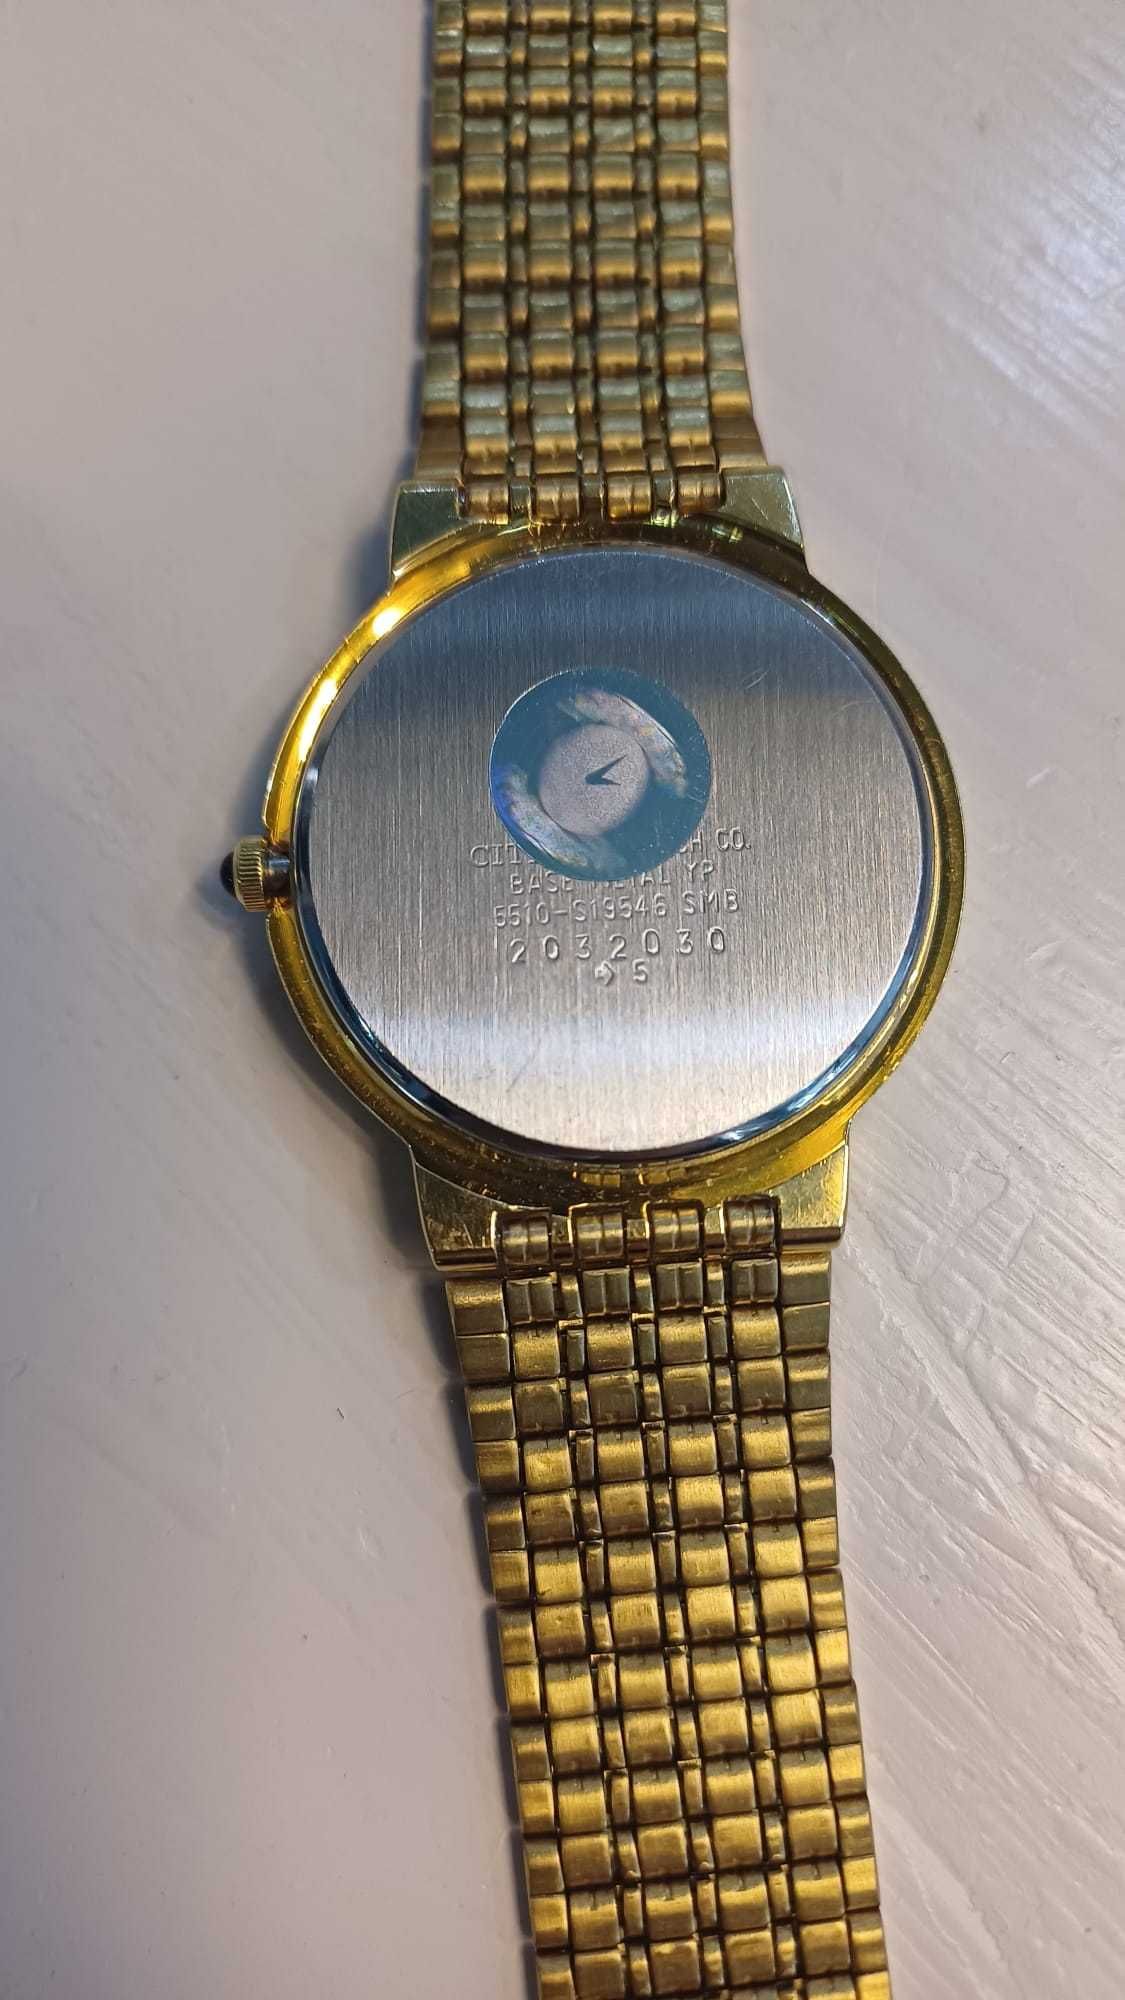 Relógio da marca Citizen